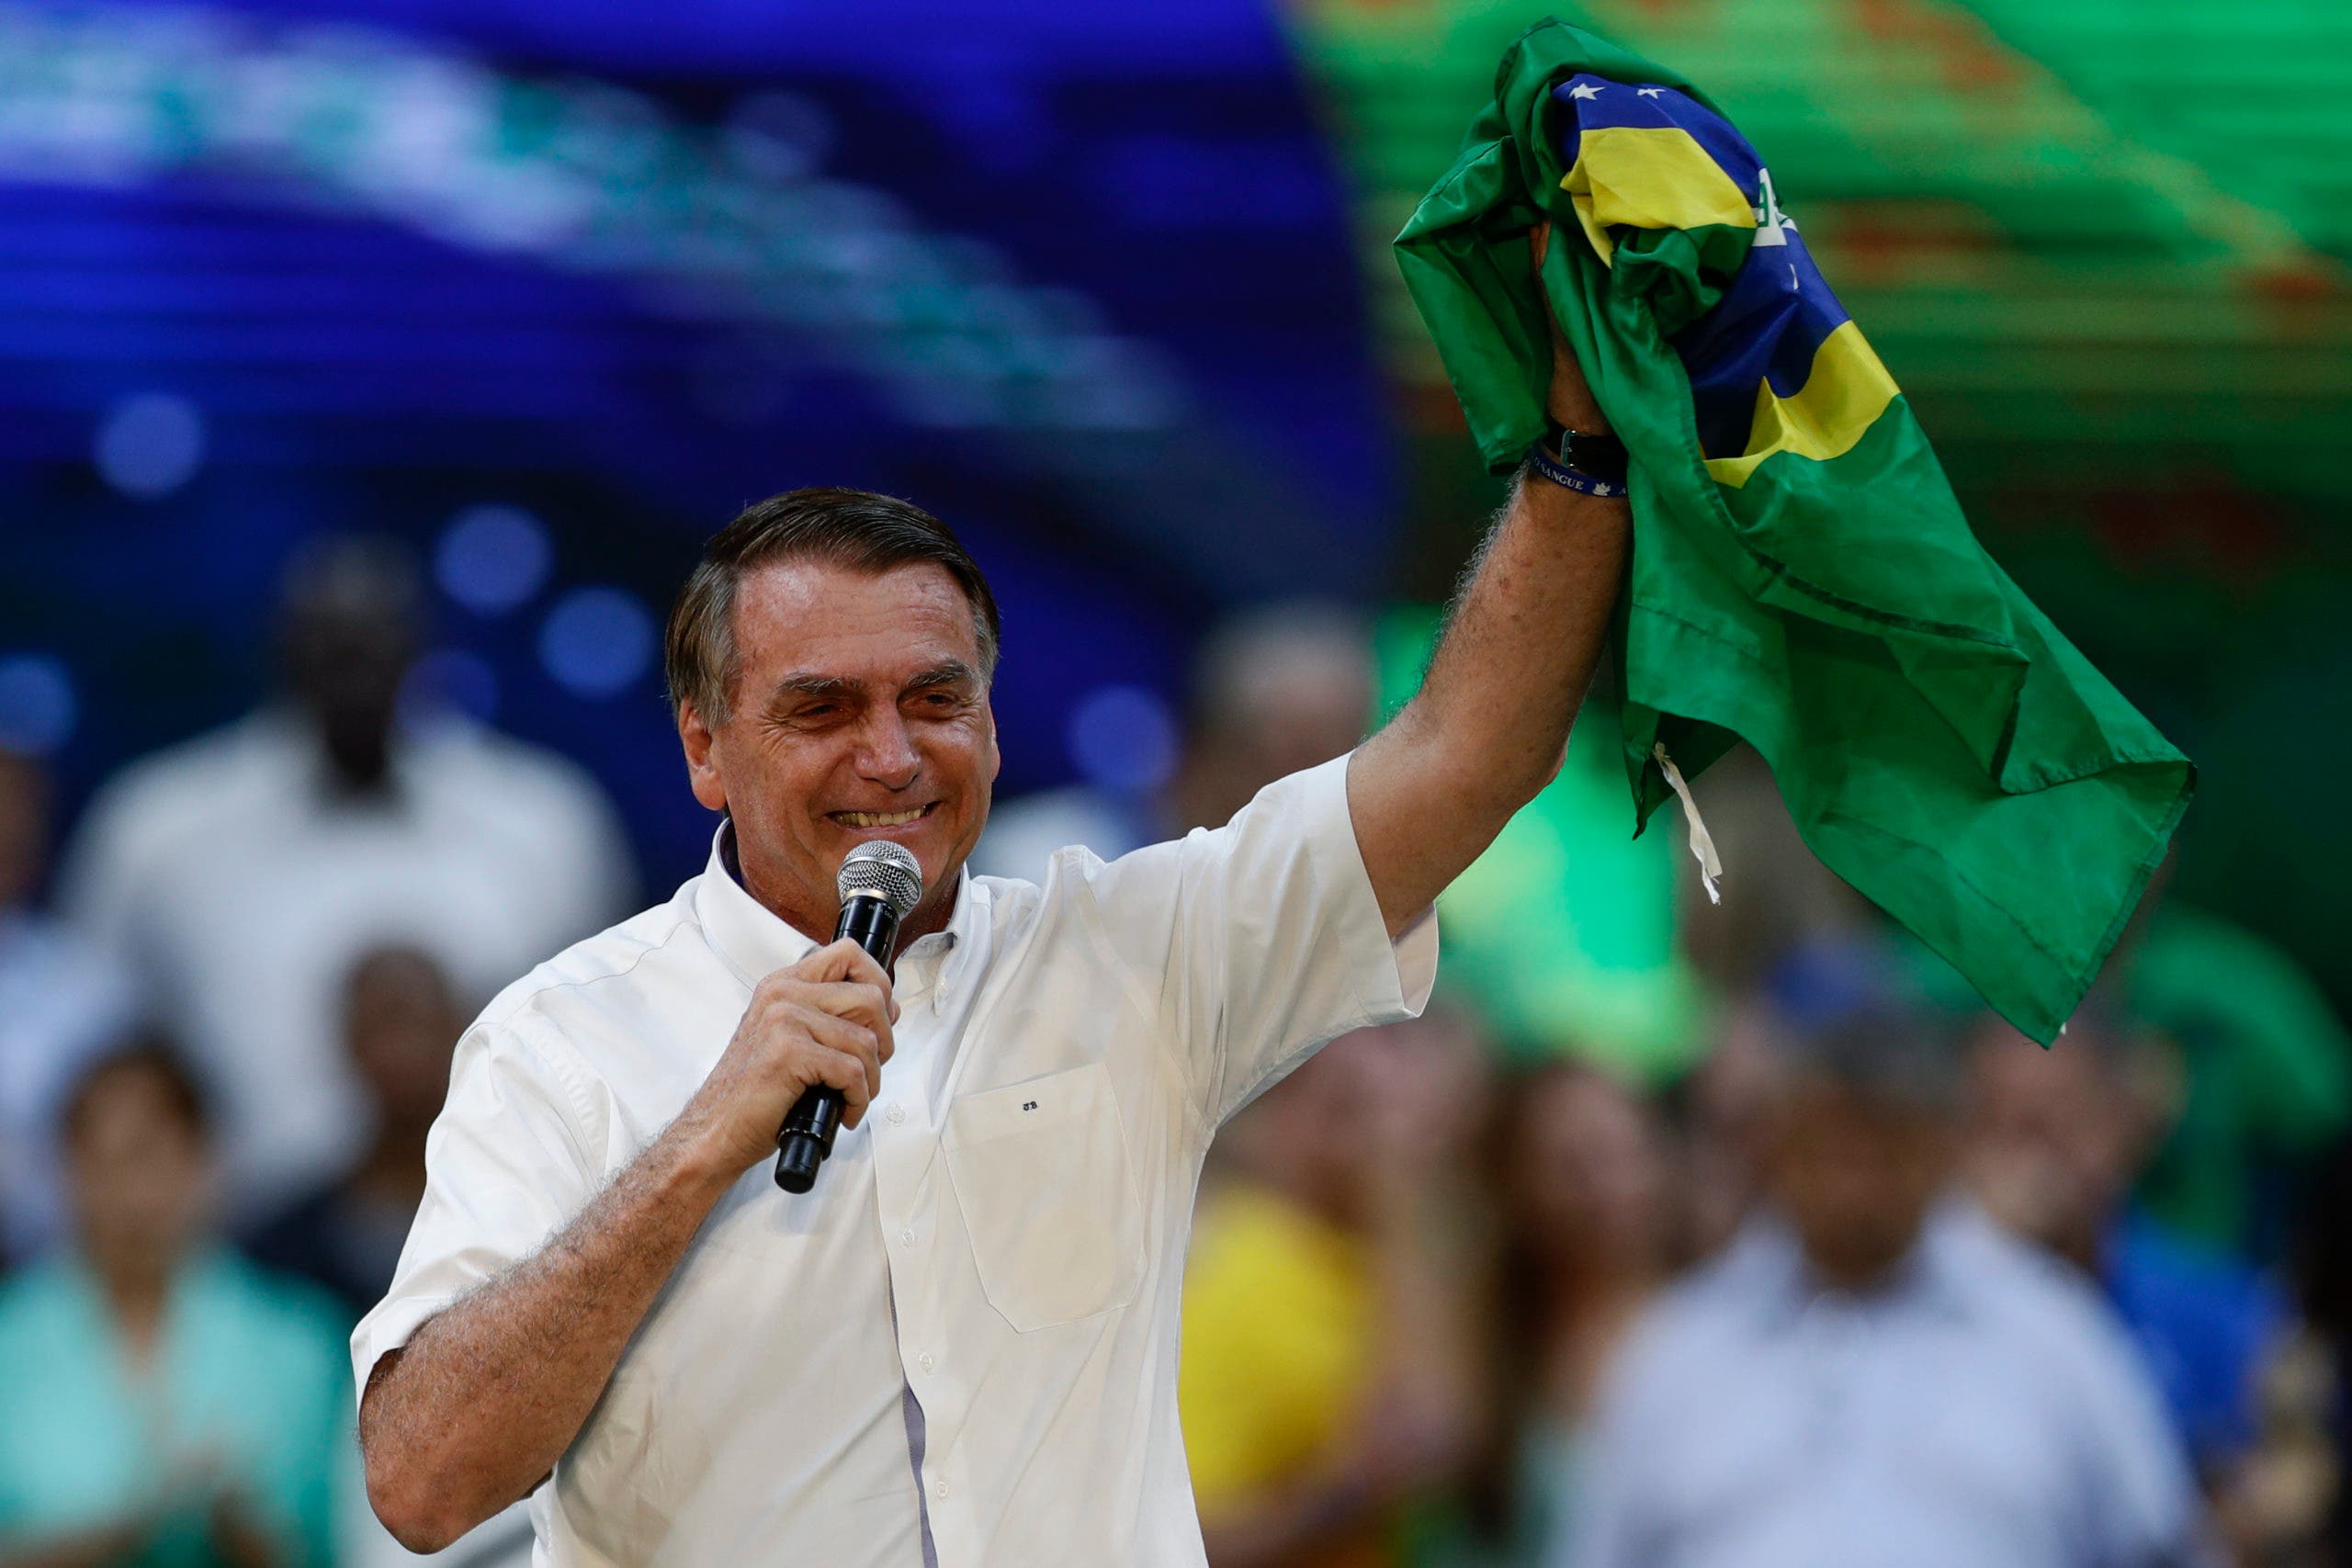 Brasil: Bolsonaro oficializa su candidatura para reelegirse